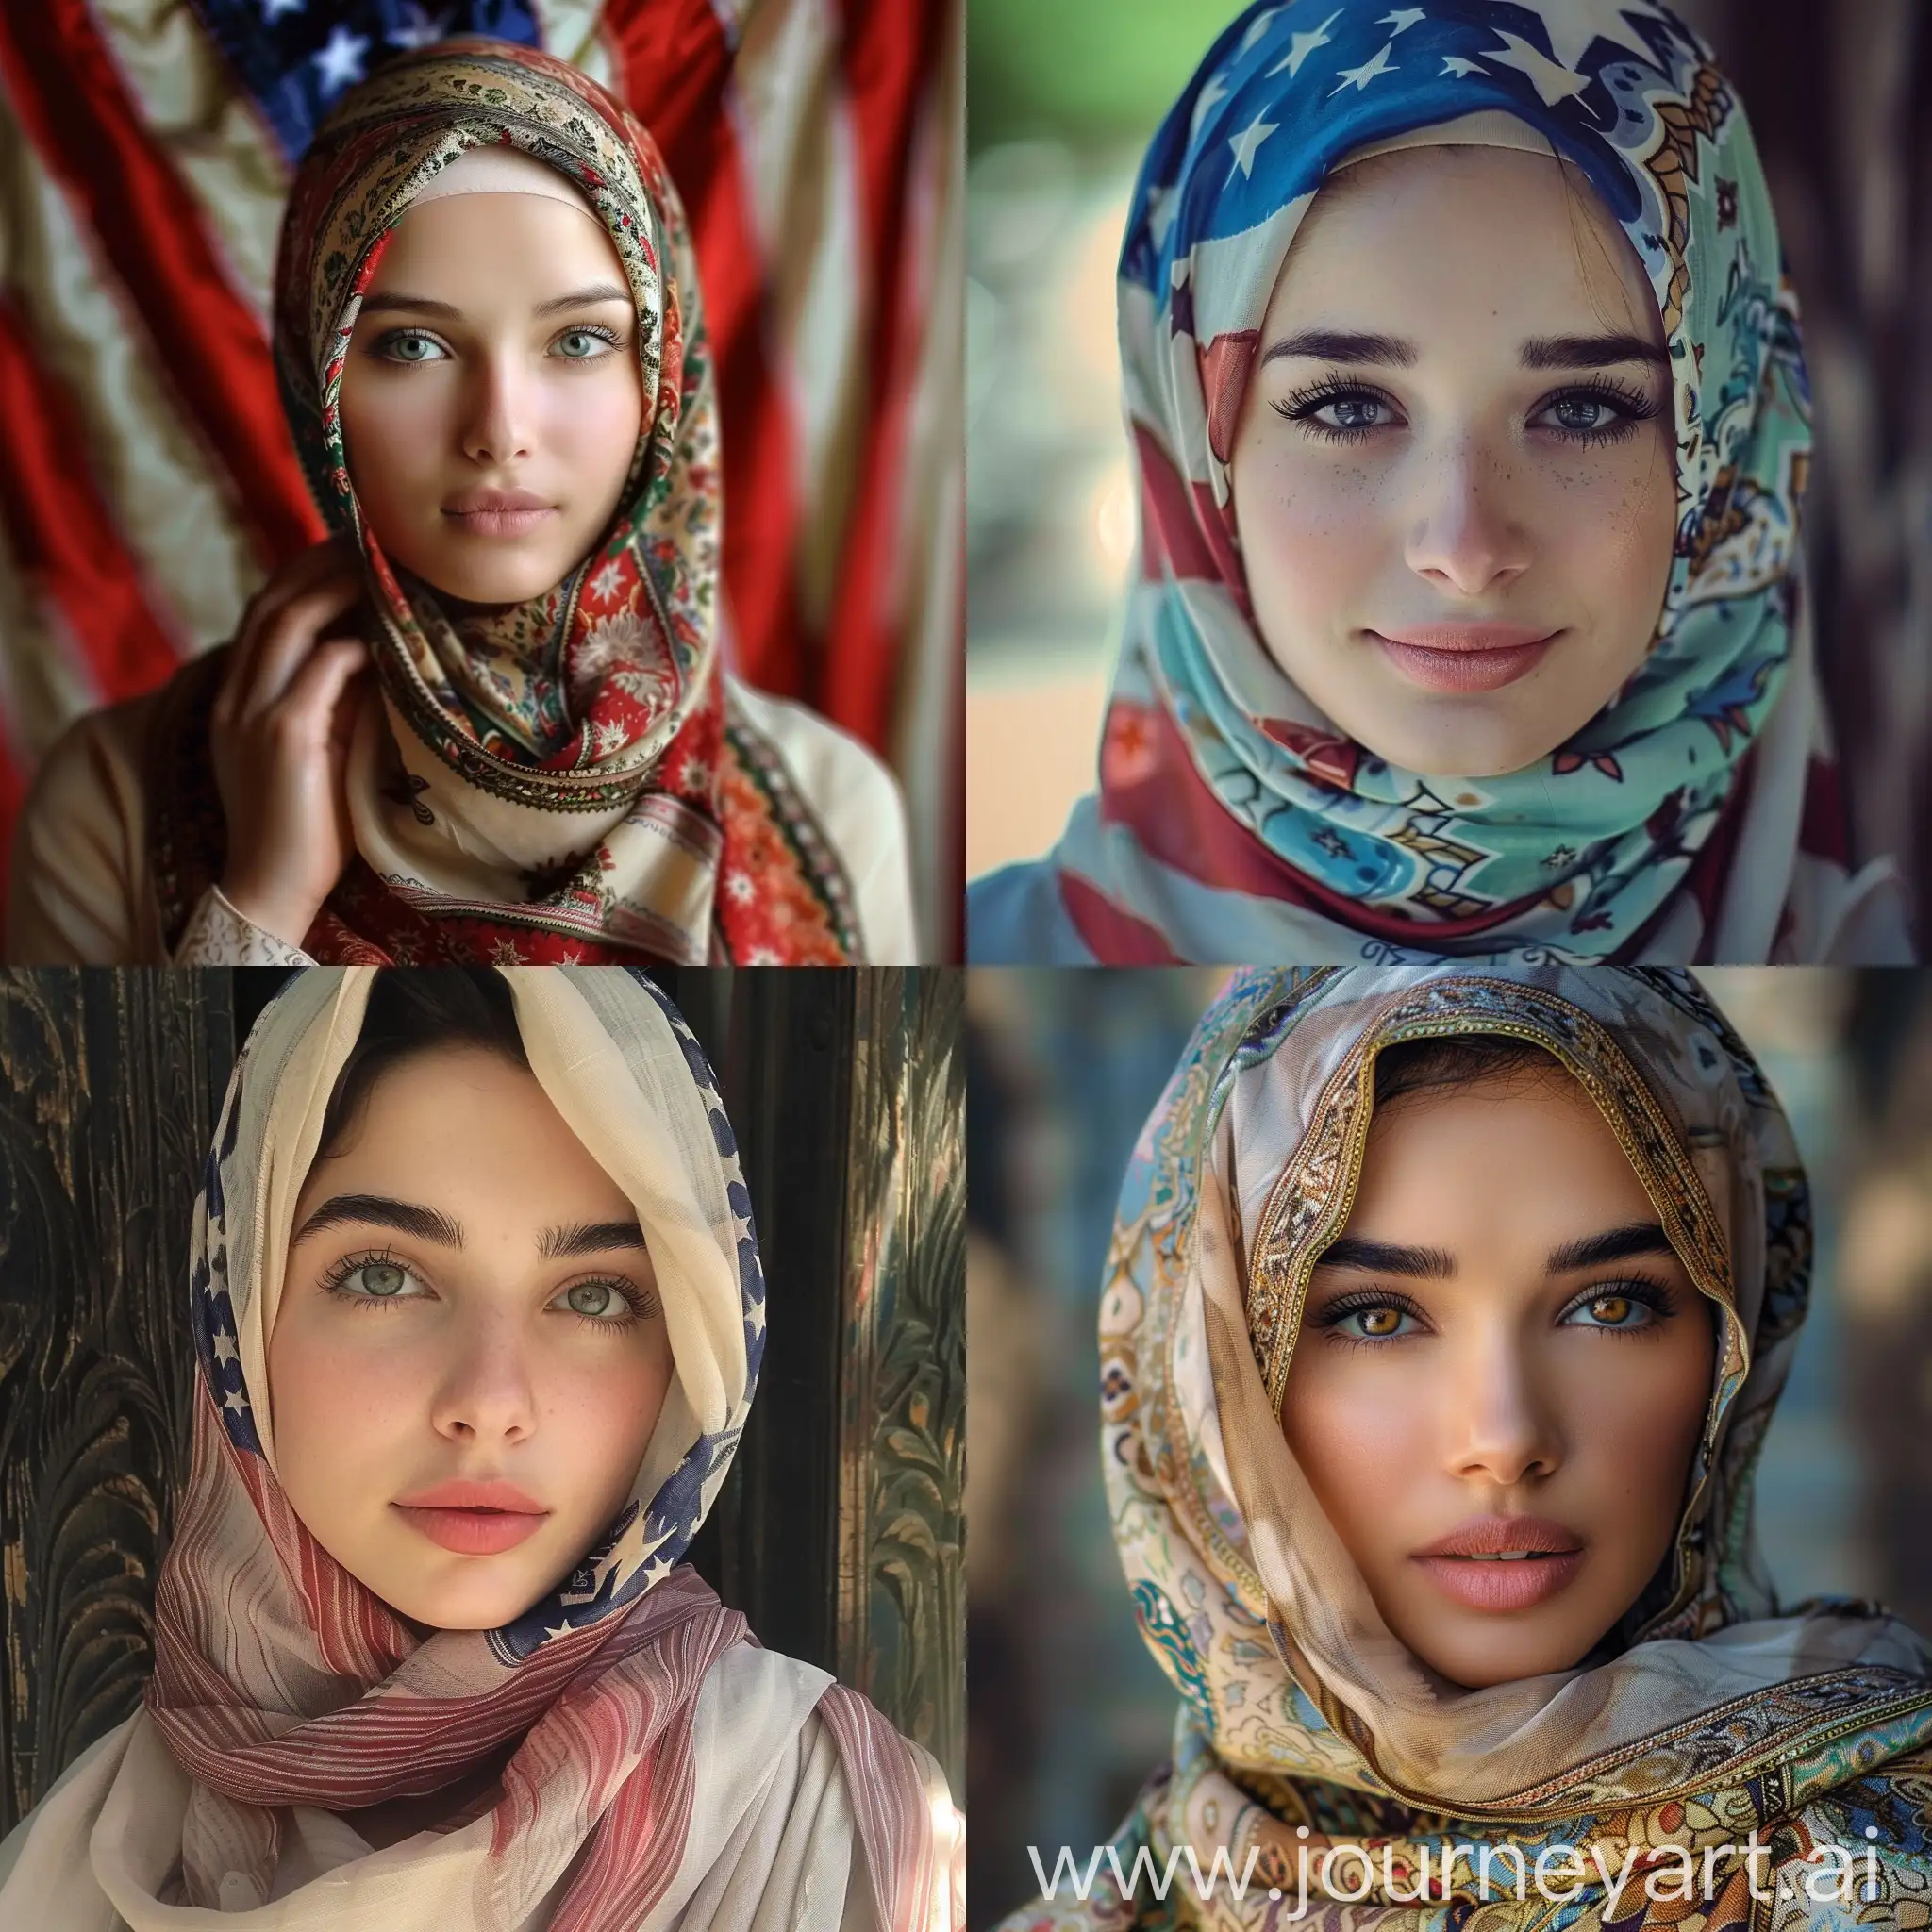 Beautiful American girls halal